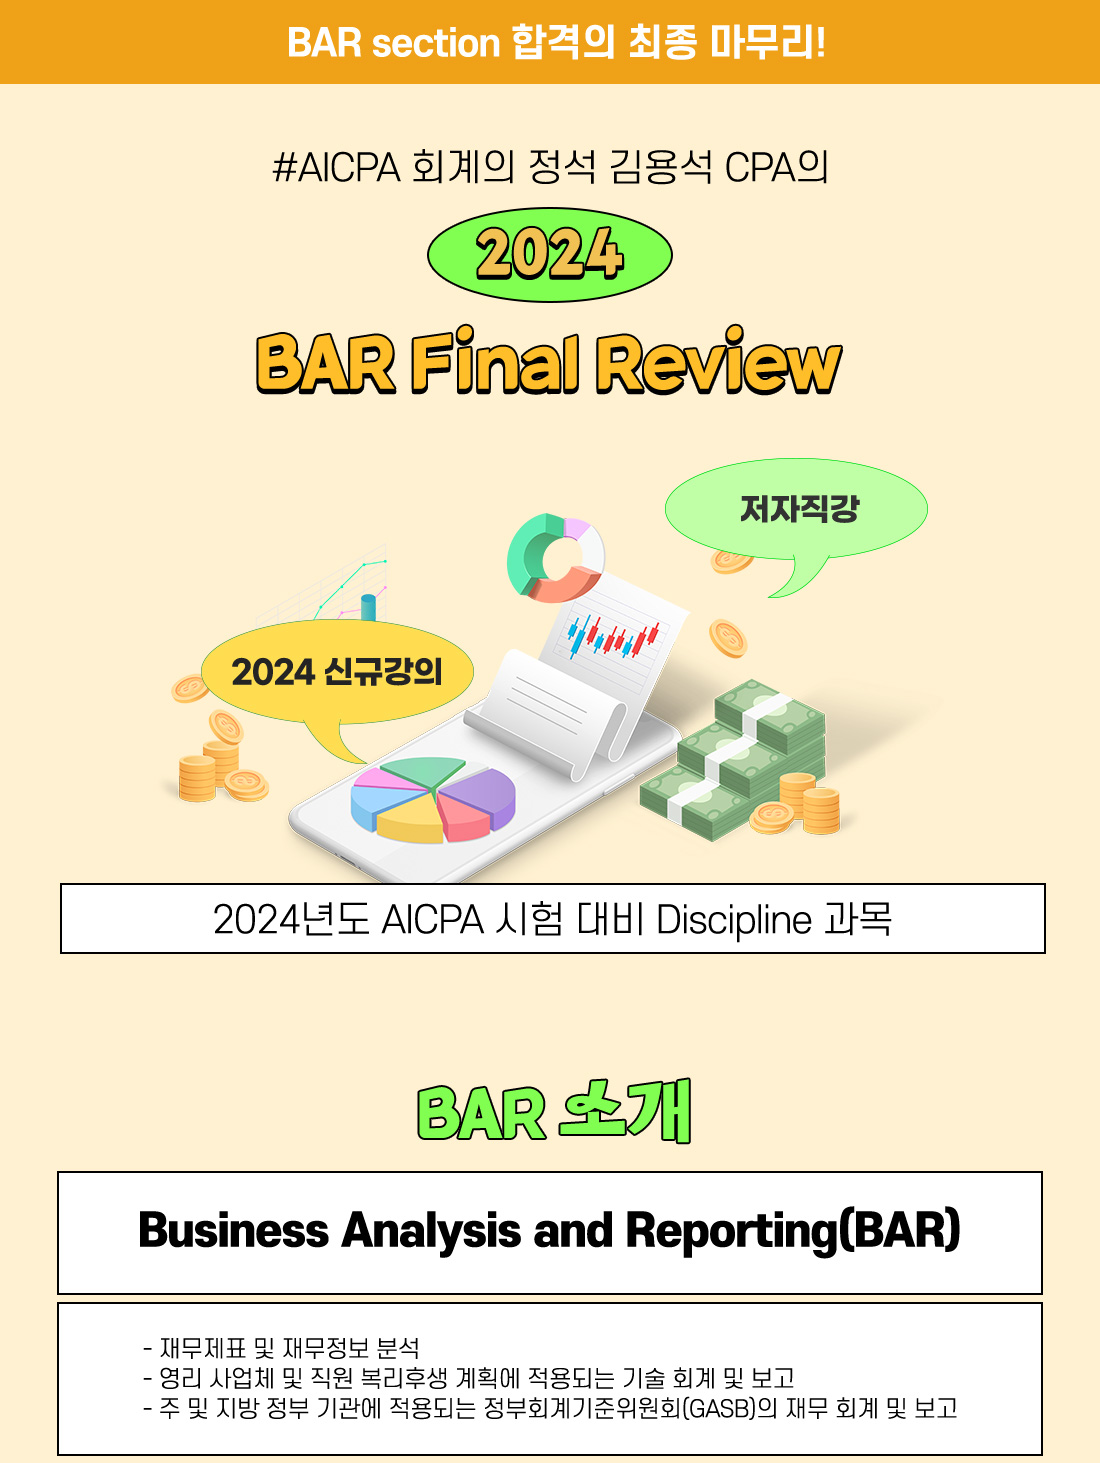 AICPA BAR Final Review 단과